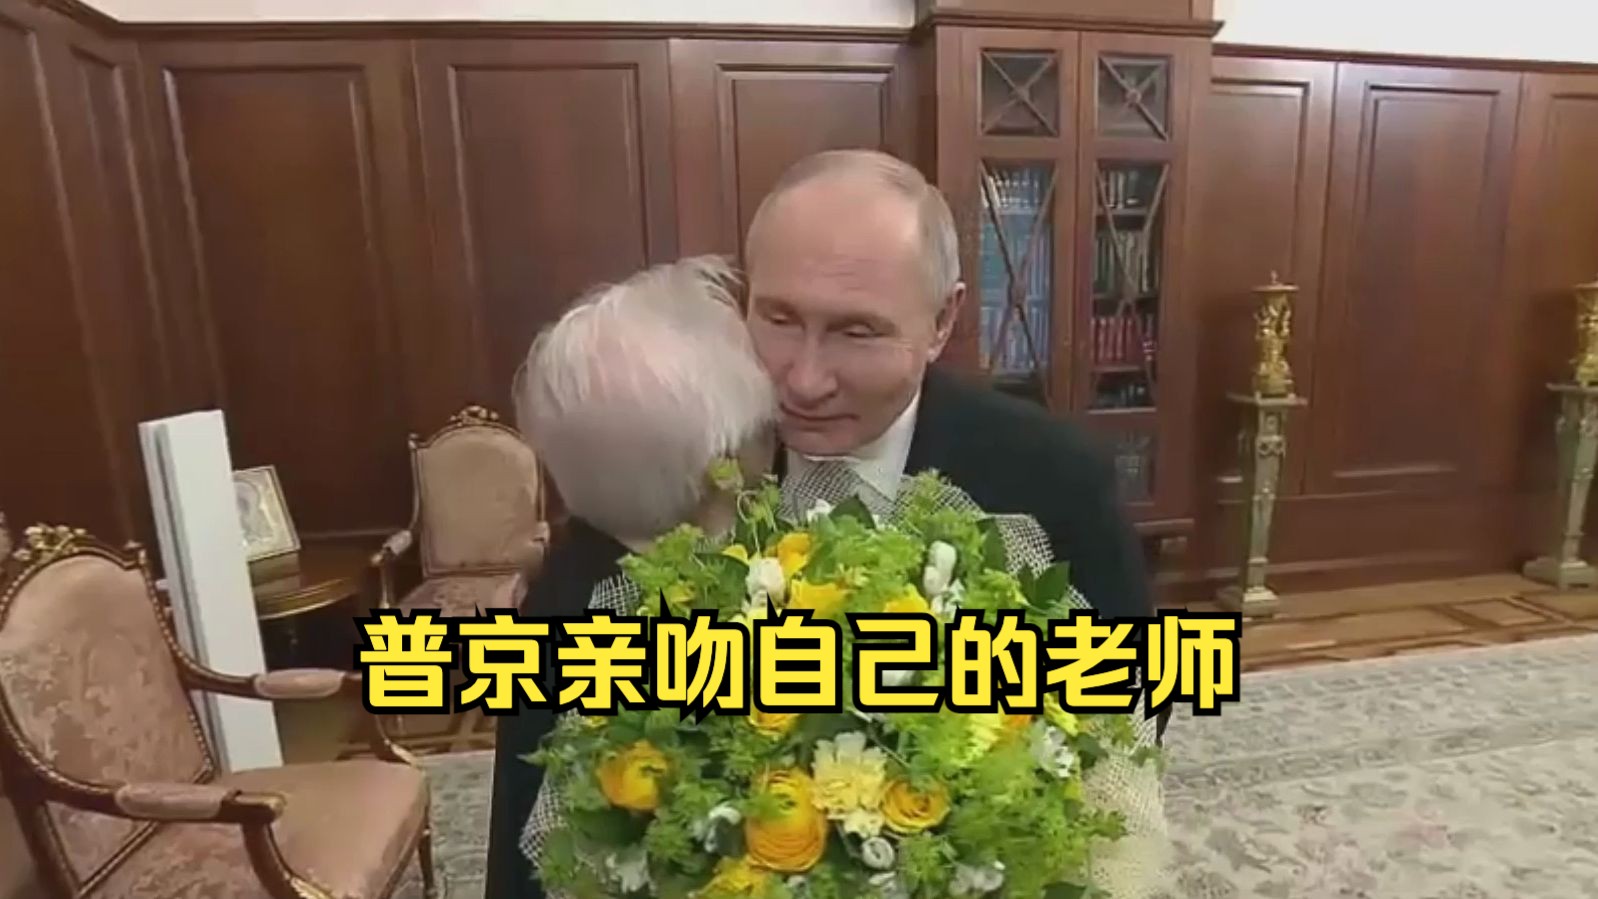 普京会见自己年近91岁的老师并献花亲吻